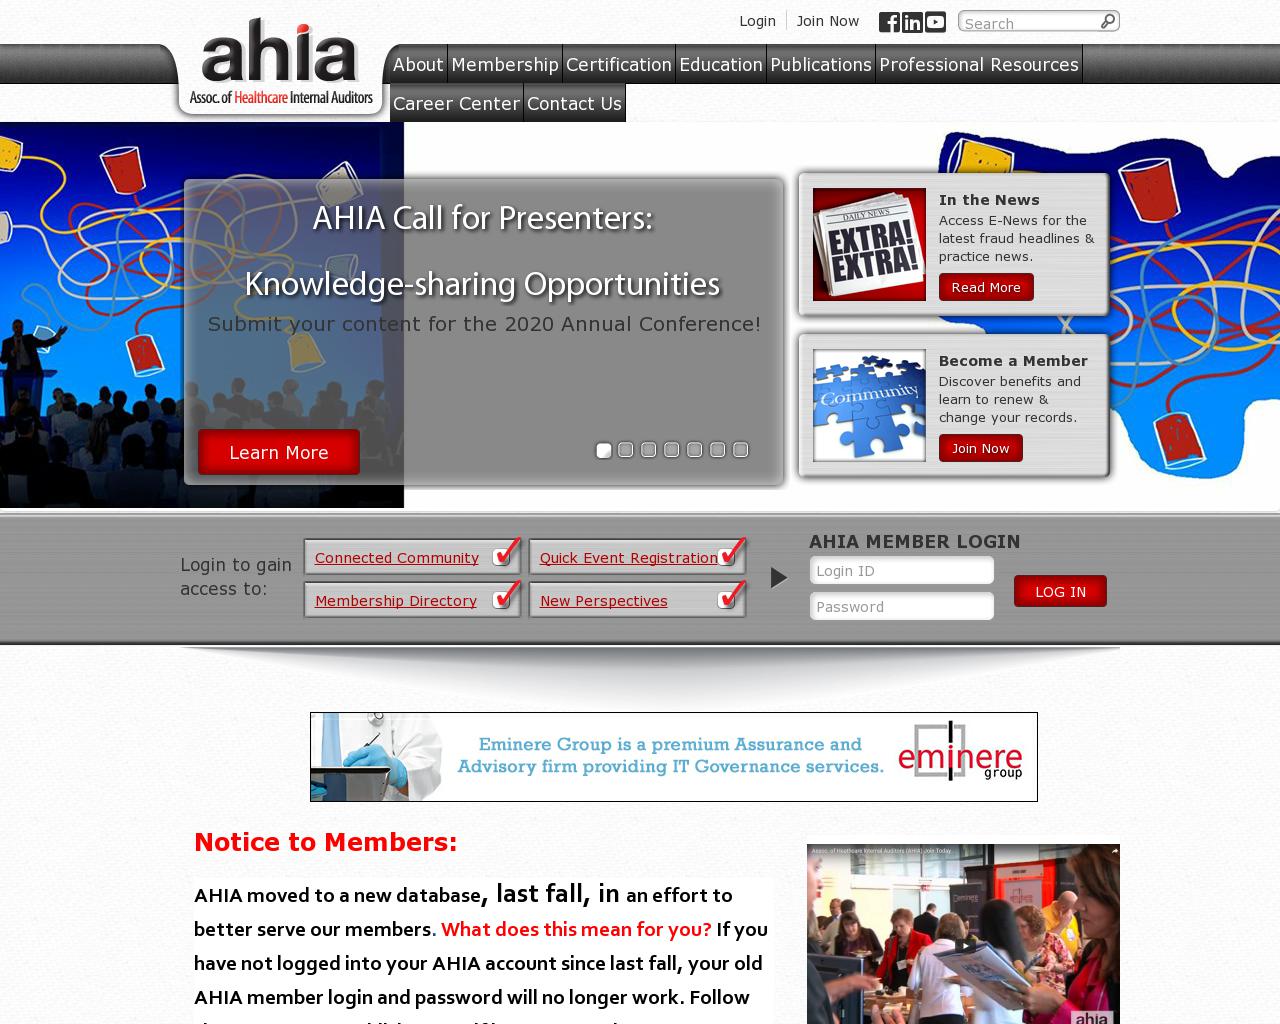 ahia.org